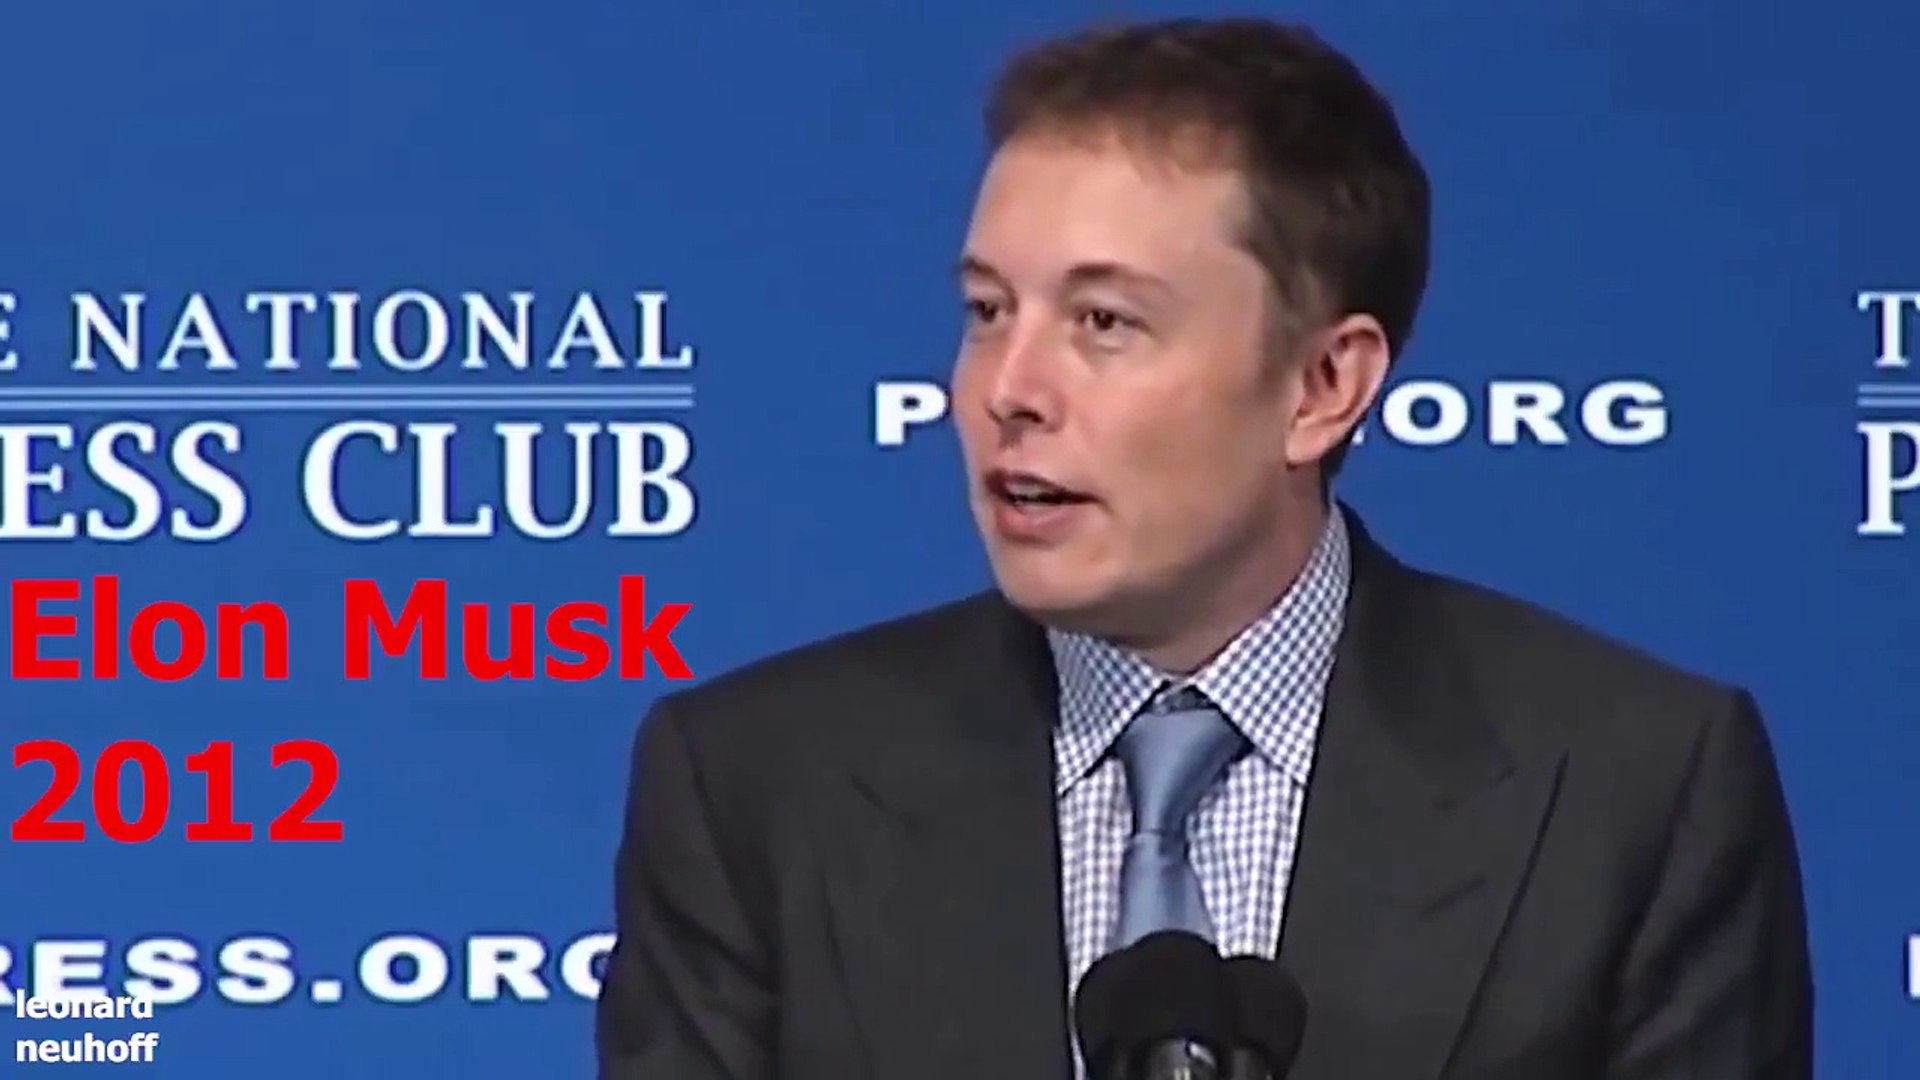 TECHNOLOGY Elon Musk completely destroys Jeff Bezos